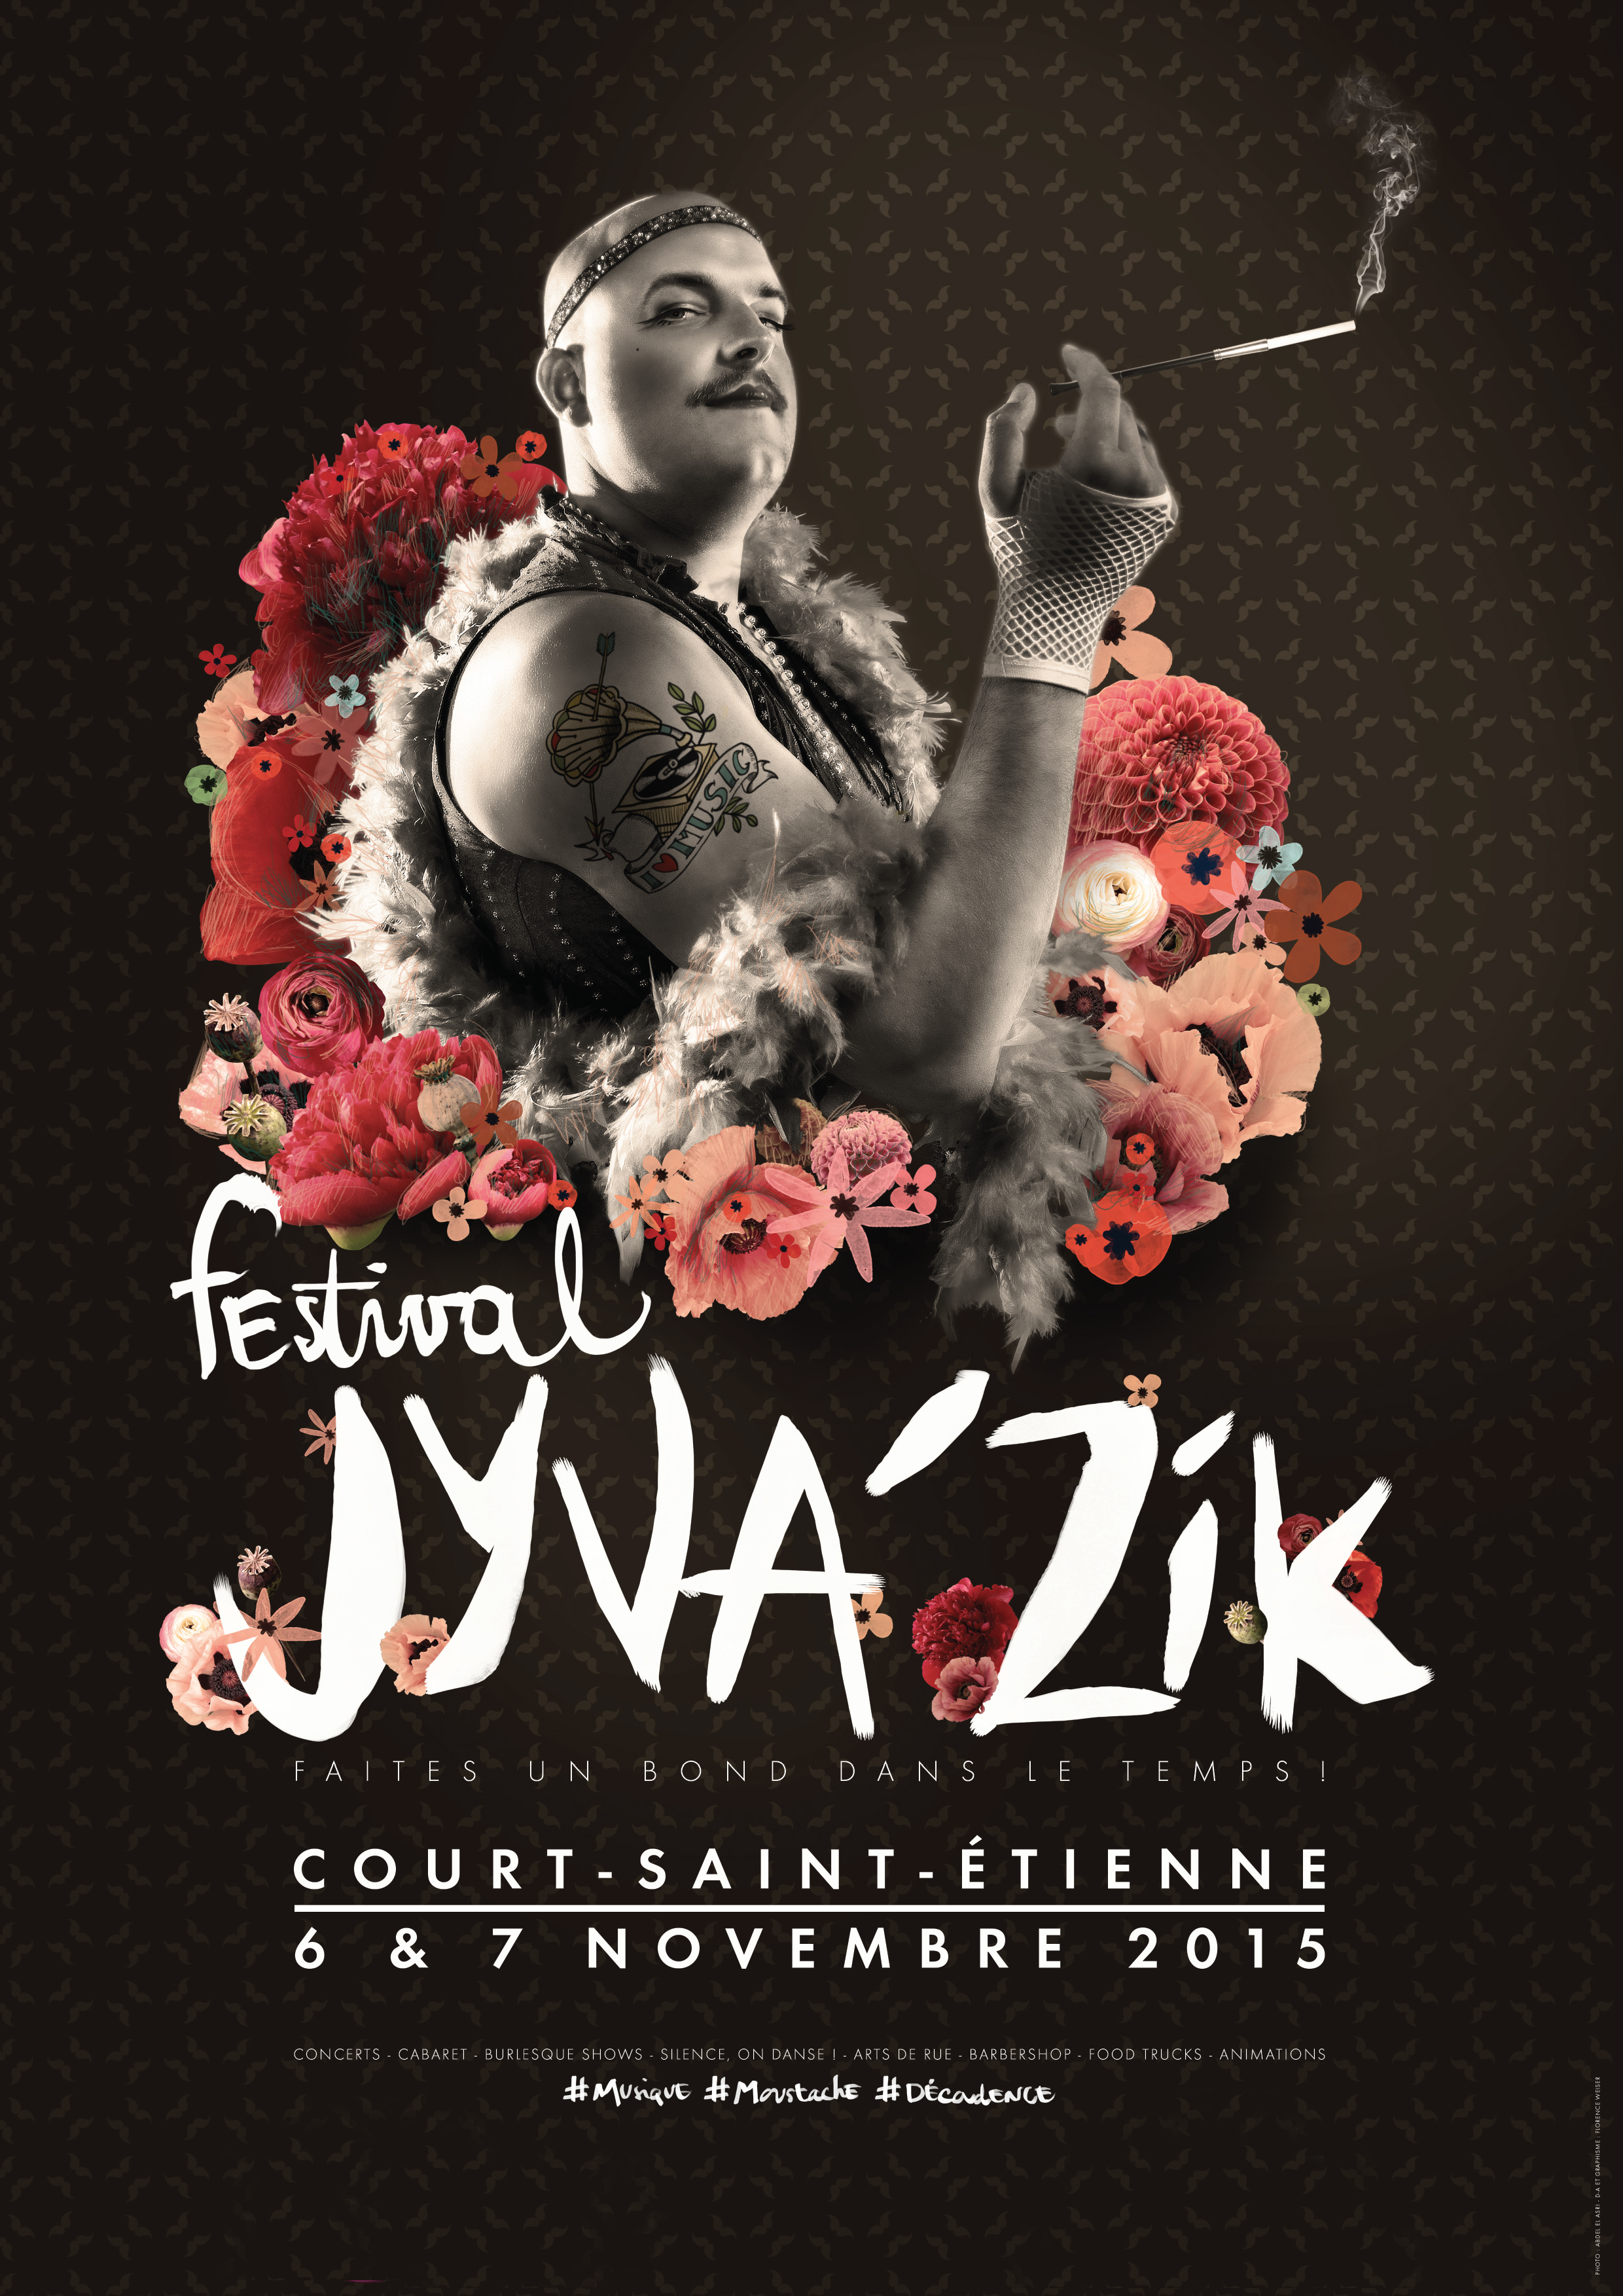 SAVE THE DATE : Le 6 et 7 novembre Jyva'Zik Festival sera au PAM Expo de Court St Etienne !!